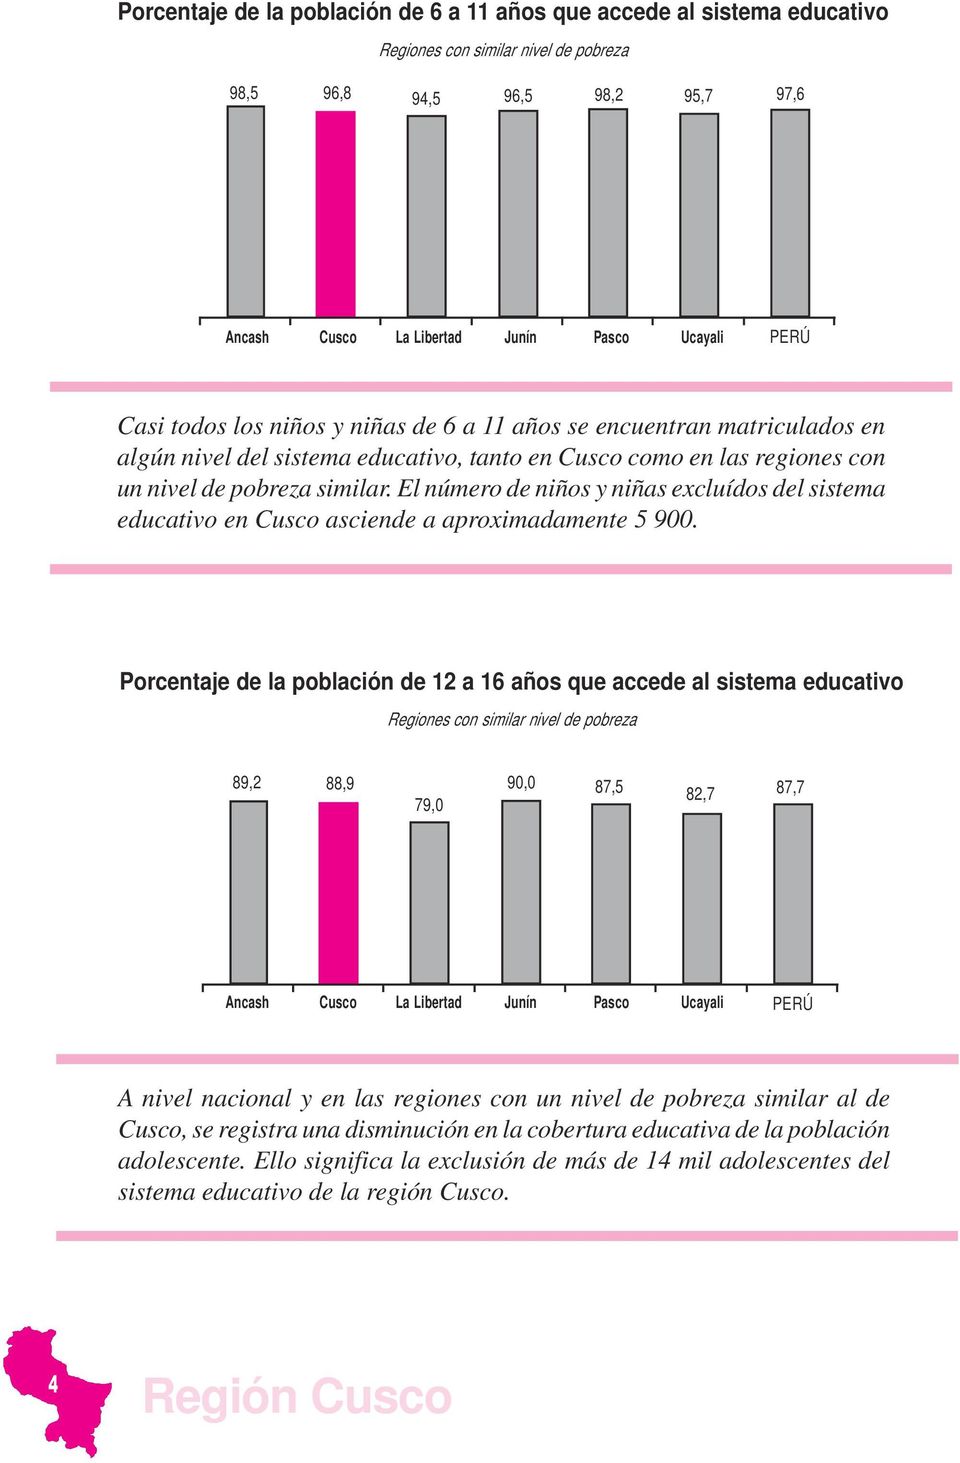 El número de niños y niñas excluídos del sistema educativo en Cusco asciende a aproximadamente 5 900.